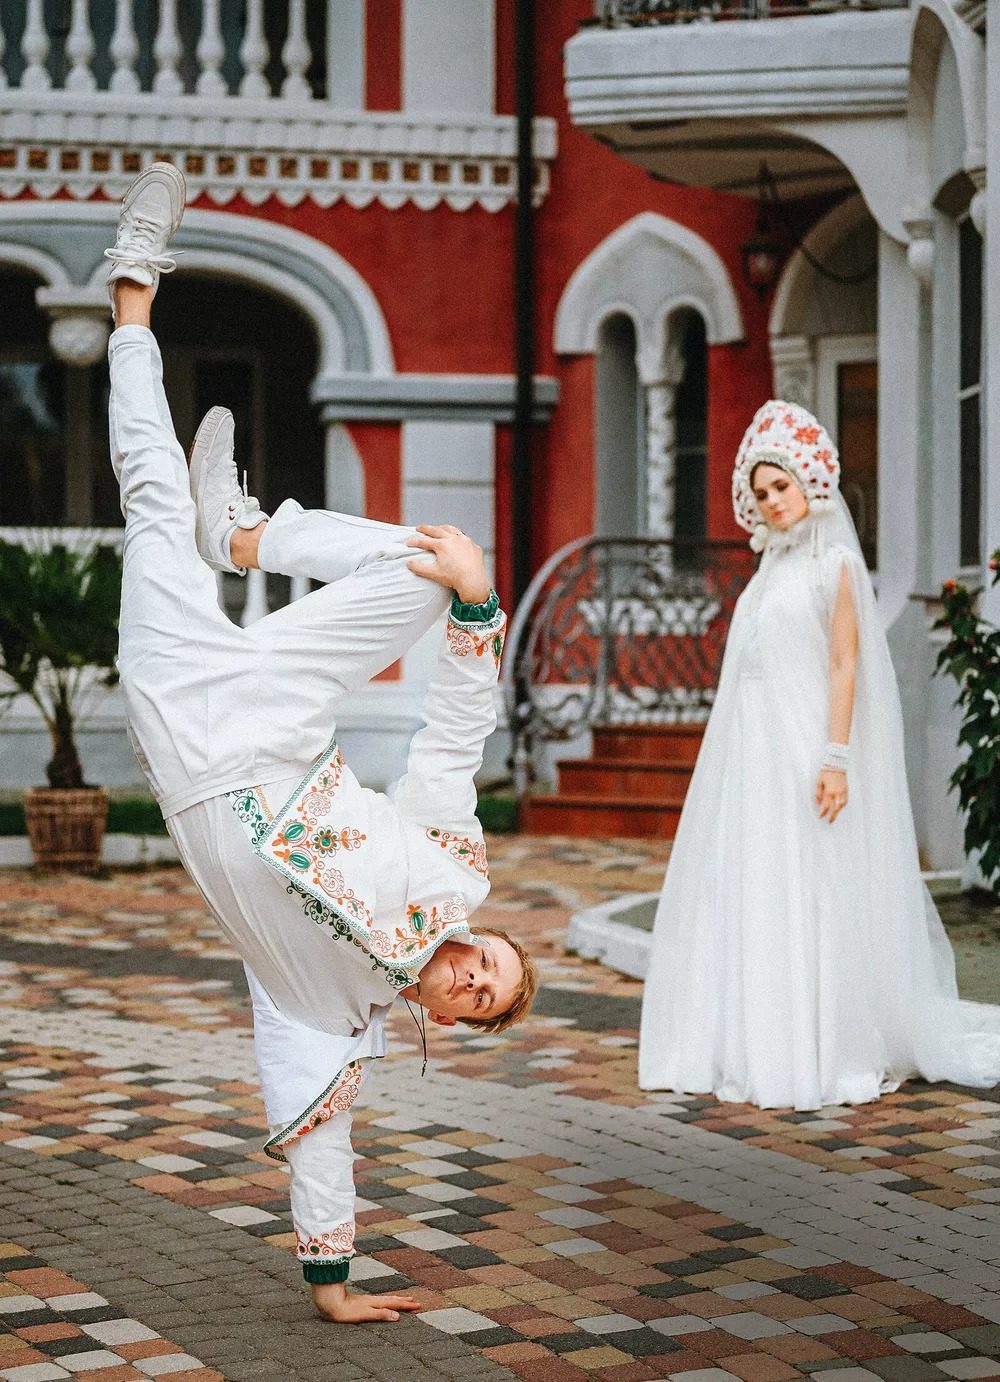 Ангелина Стречина рассказала о свадьбе в русском стиле